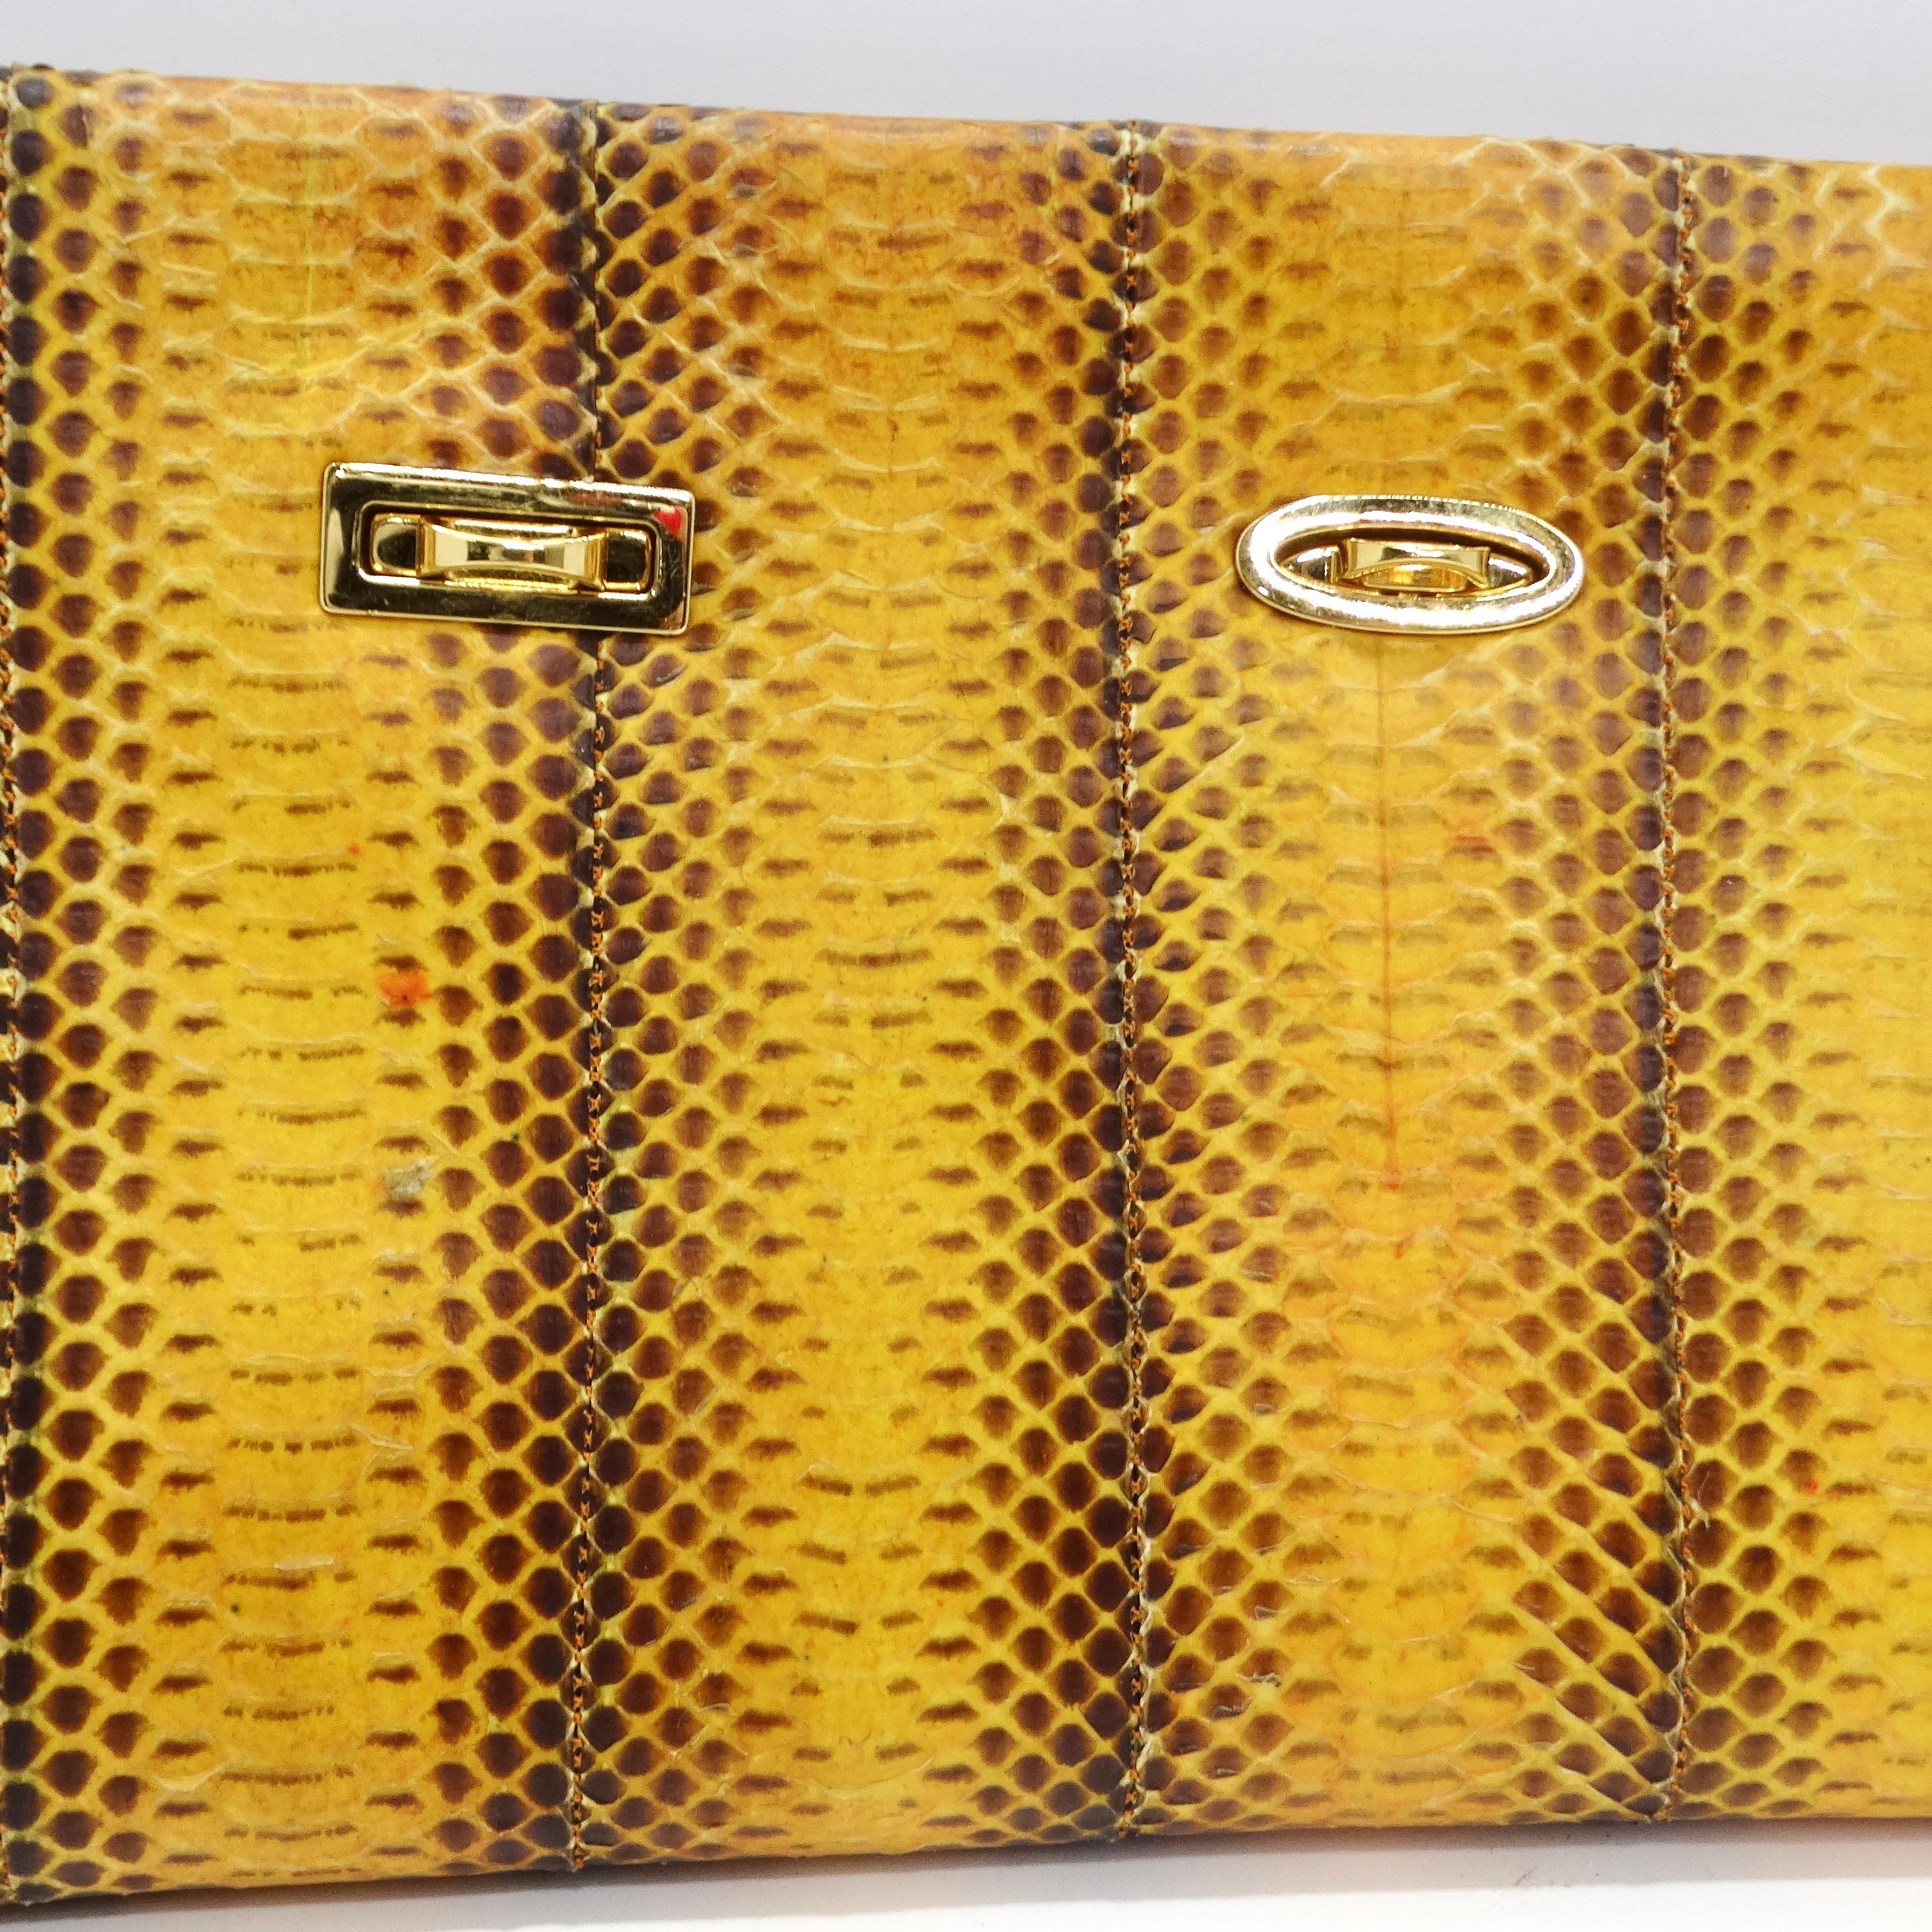 Voici l'étonnante pochette en cuir gaufré en peau de serpent jaune des années 1980 de VBH, un accessoire vraiment spécial et accrocheur qui incarne le style audacieux et vibrant des années 1980. Fabriquée à la main et en édition limitée, cette